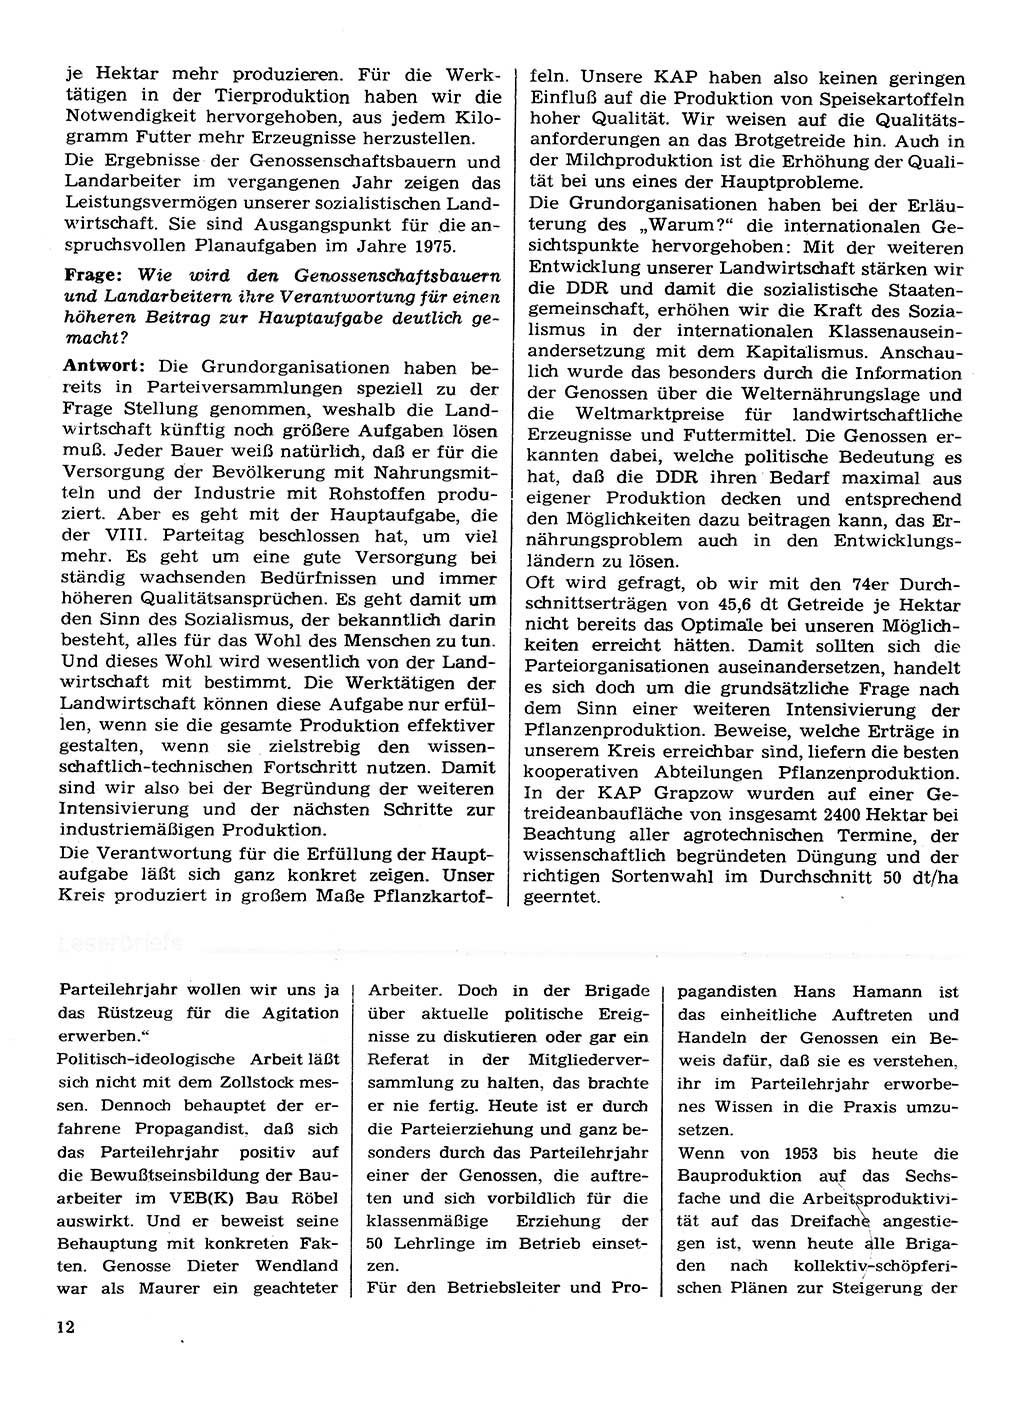 Neuer Weg (NW), Organ des Zentralkomitees (ZK) der SED (Sozialistische Einheitspartei Deutschlands) für Fragen des Parteilebens, 30. Jahrgang [Deutsche Demokratische Republik (DDR)] 1975, Seite 12 (NW ZK SED DDR 1975, S. 12)